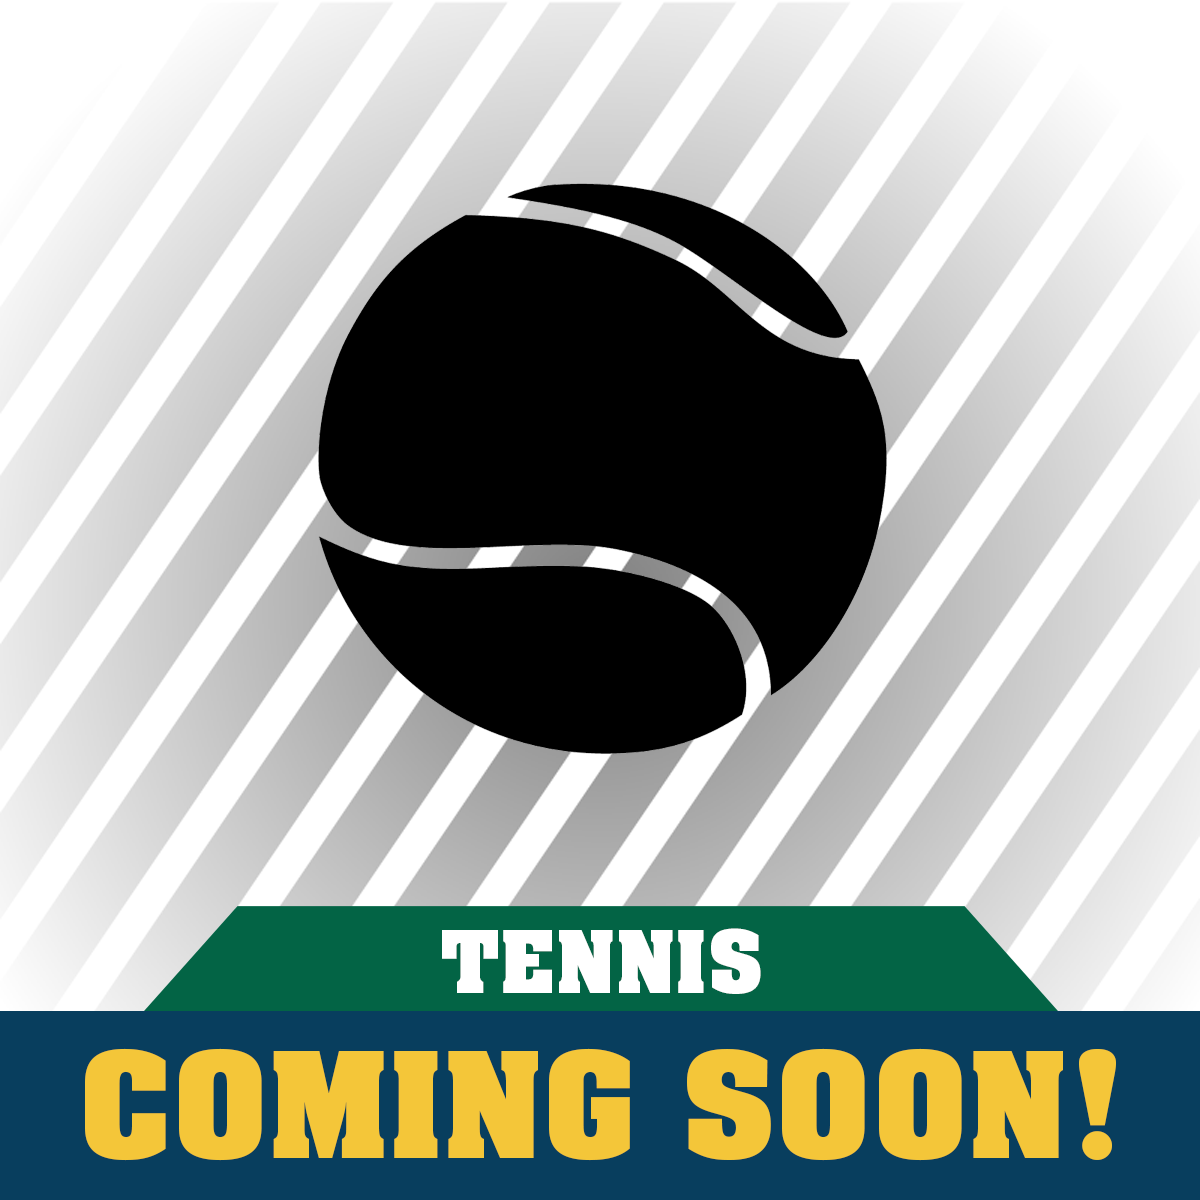 Clover Garden Tennis Apparel Coming Soon!